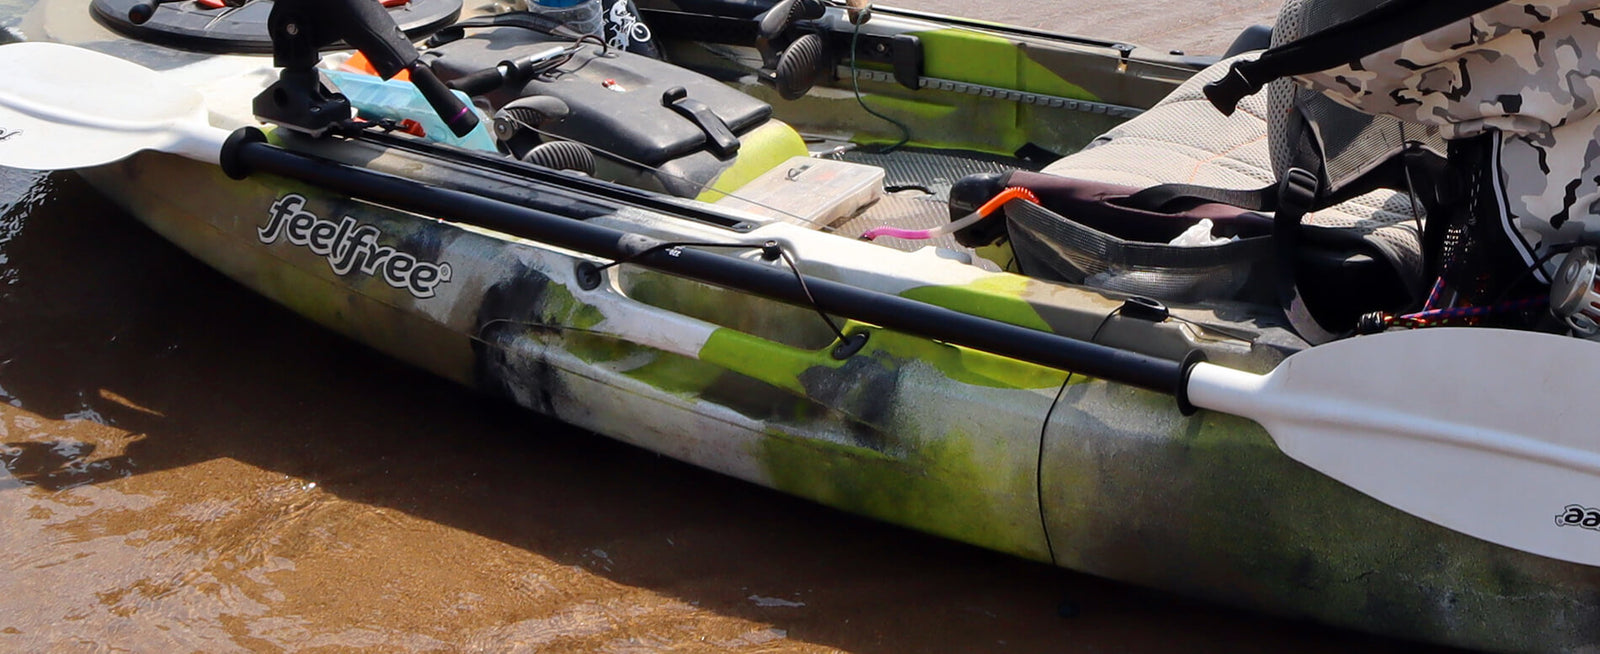 bssiwbepon 2PCS Kayak Paddle Holder Kayak Track Mount Accessories Kayak Oar  Holder for Fishing Kayak Paddles Equipment